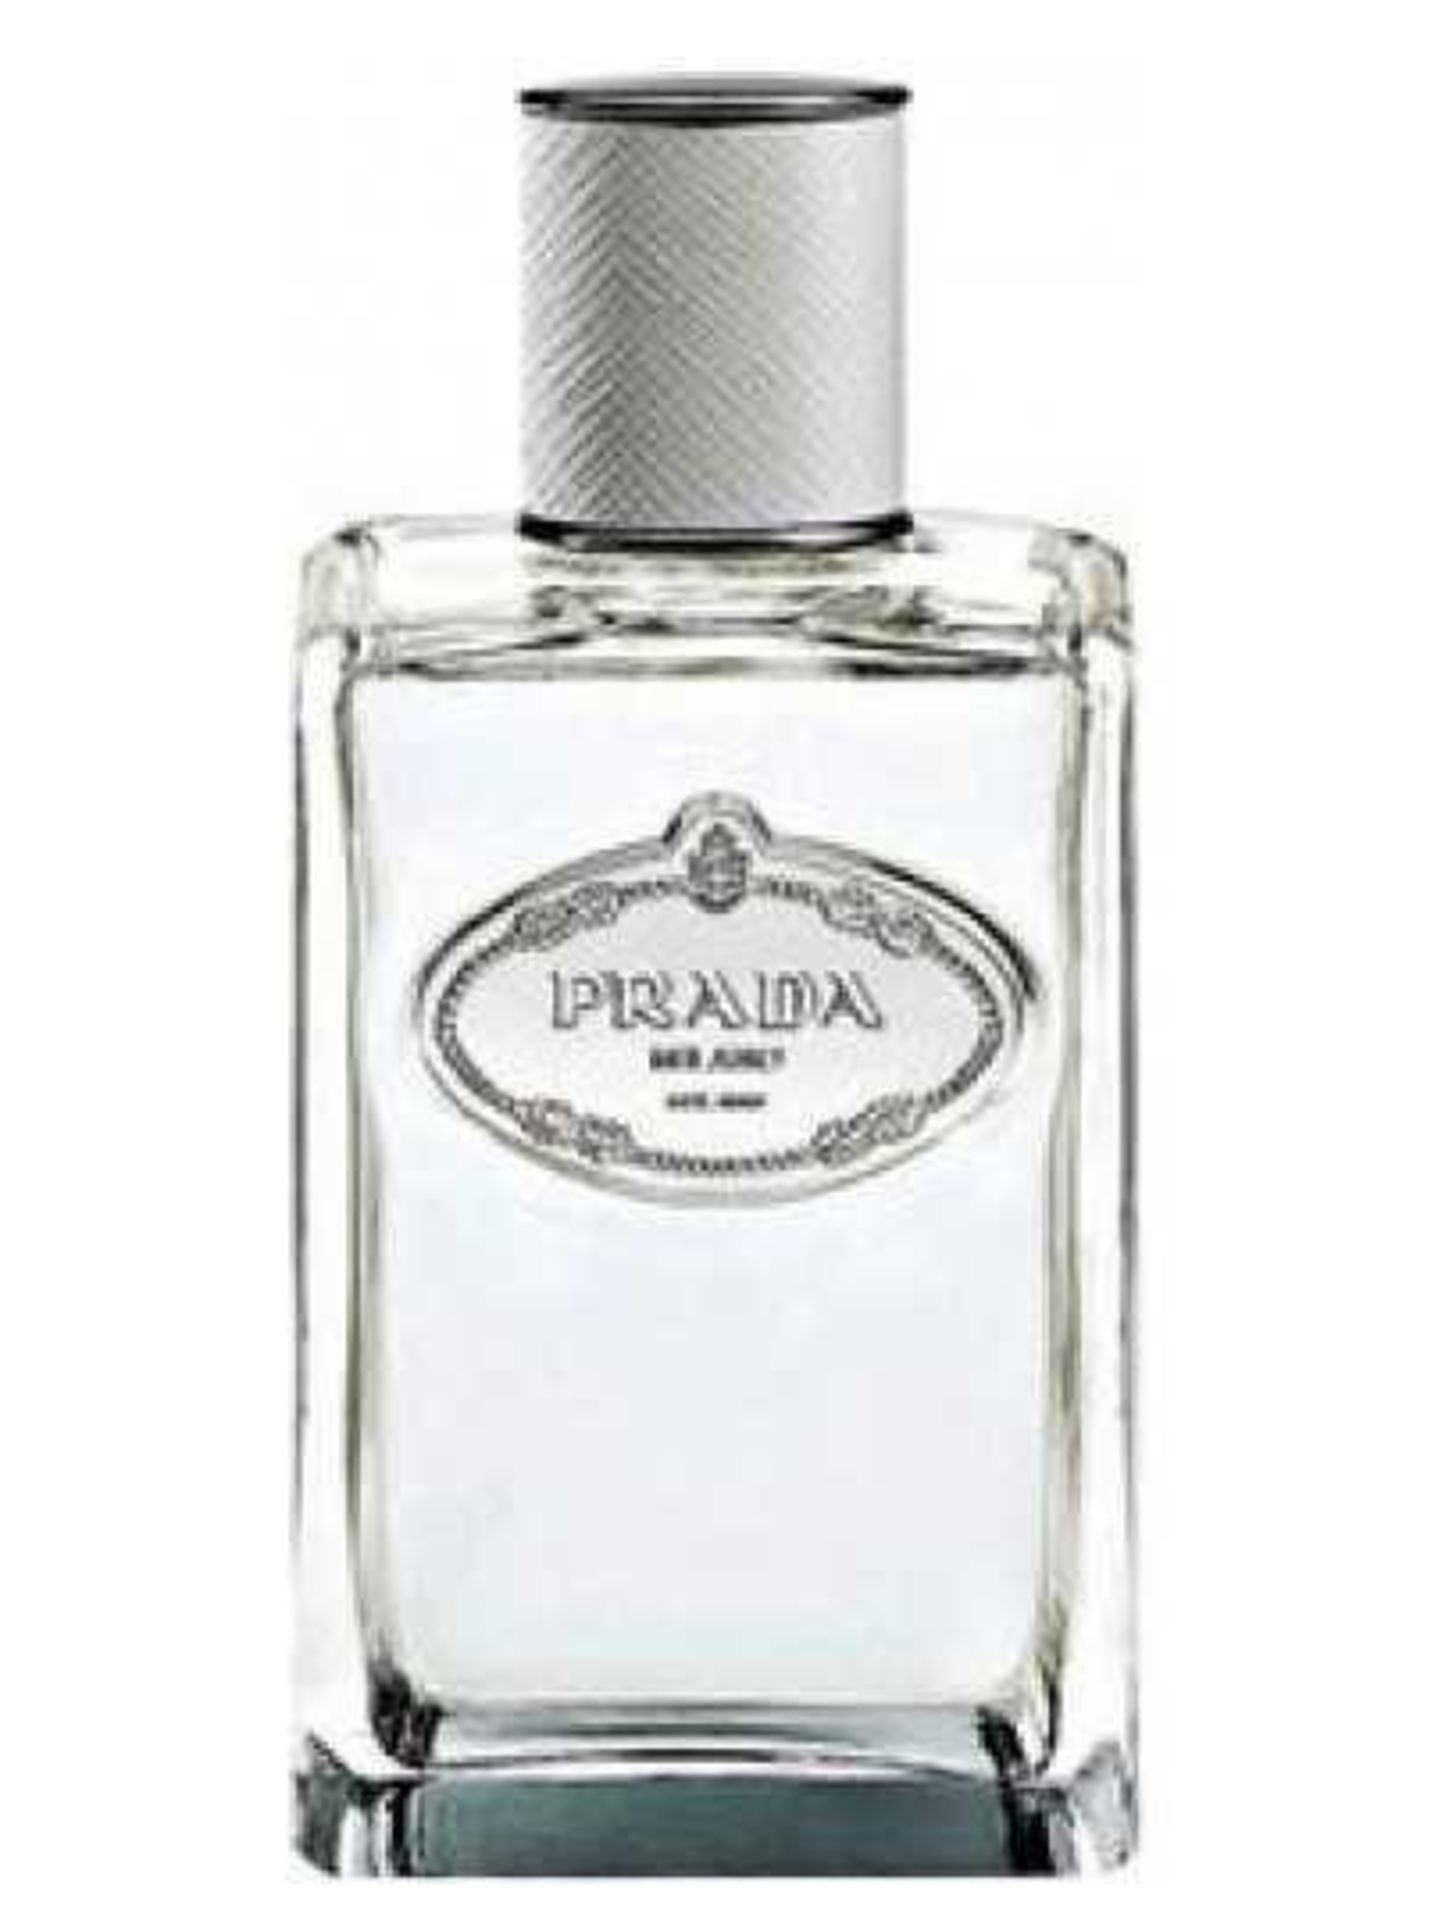 RRP £80 Brand New Boxed Full Tester Bottle Of Prada Iris Perfume Spray 100Ml